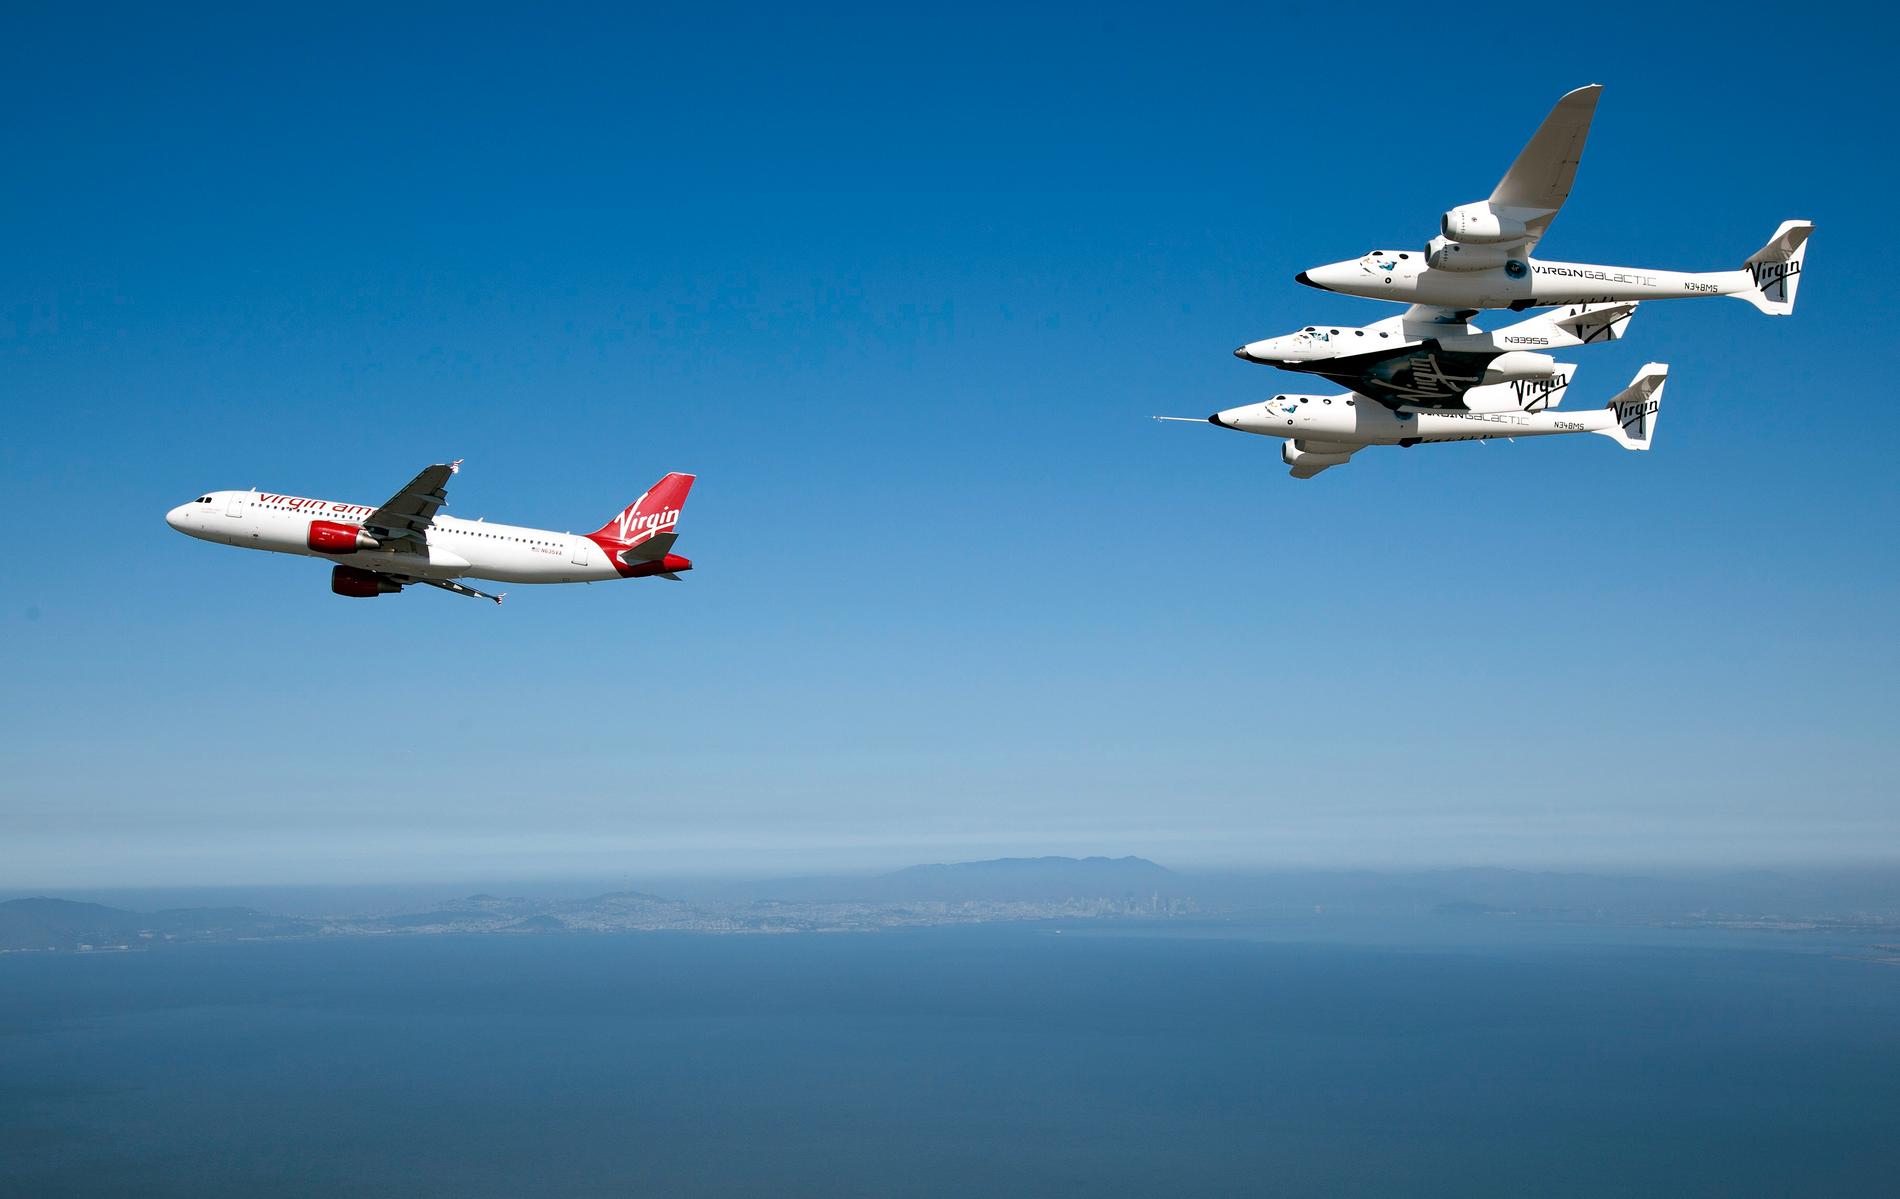 En Airbus 320 från Virgin America flyger före White Knight 2, som bär turistrymdfärjan Spaceship 2.